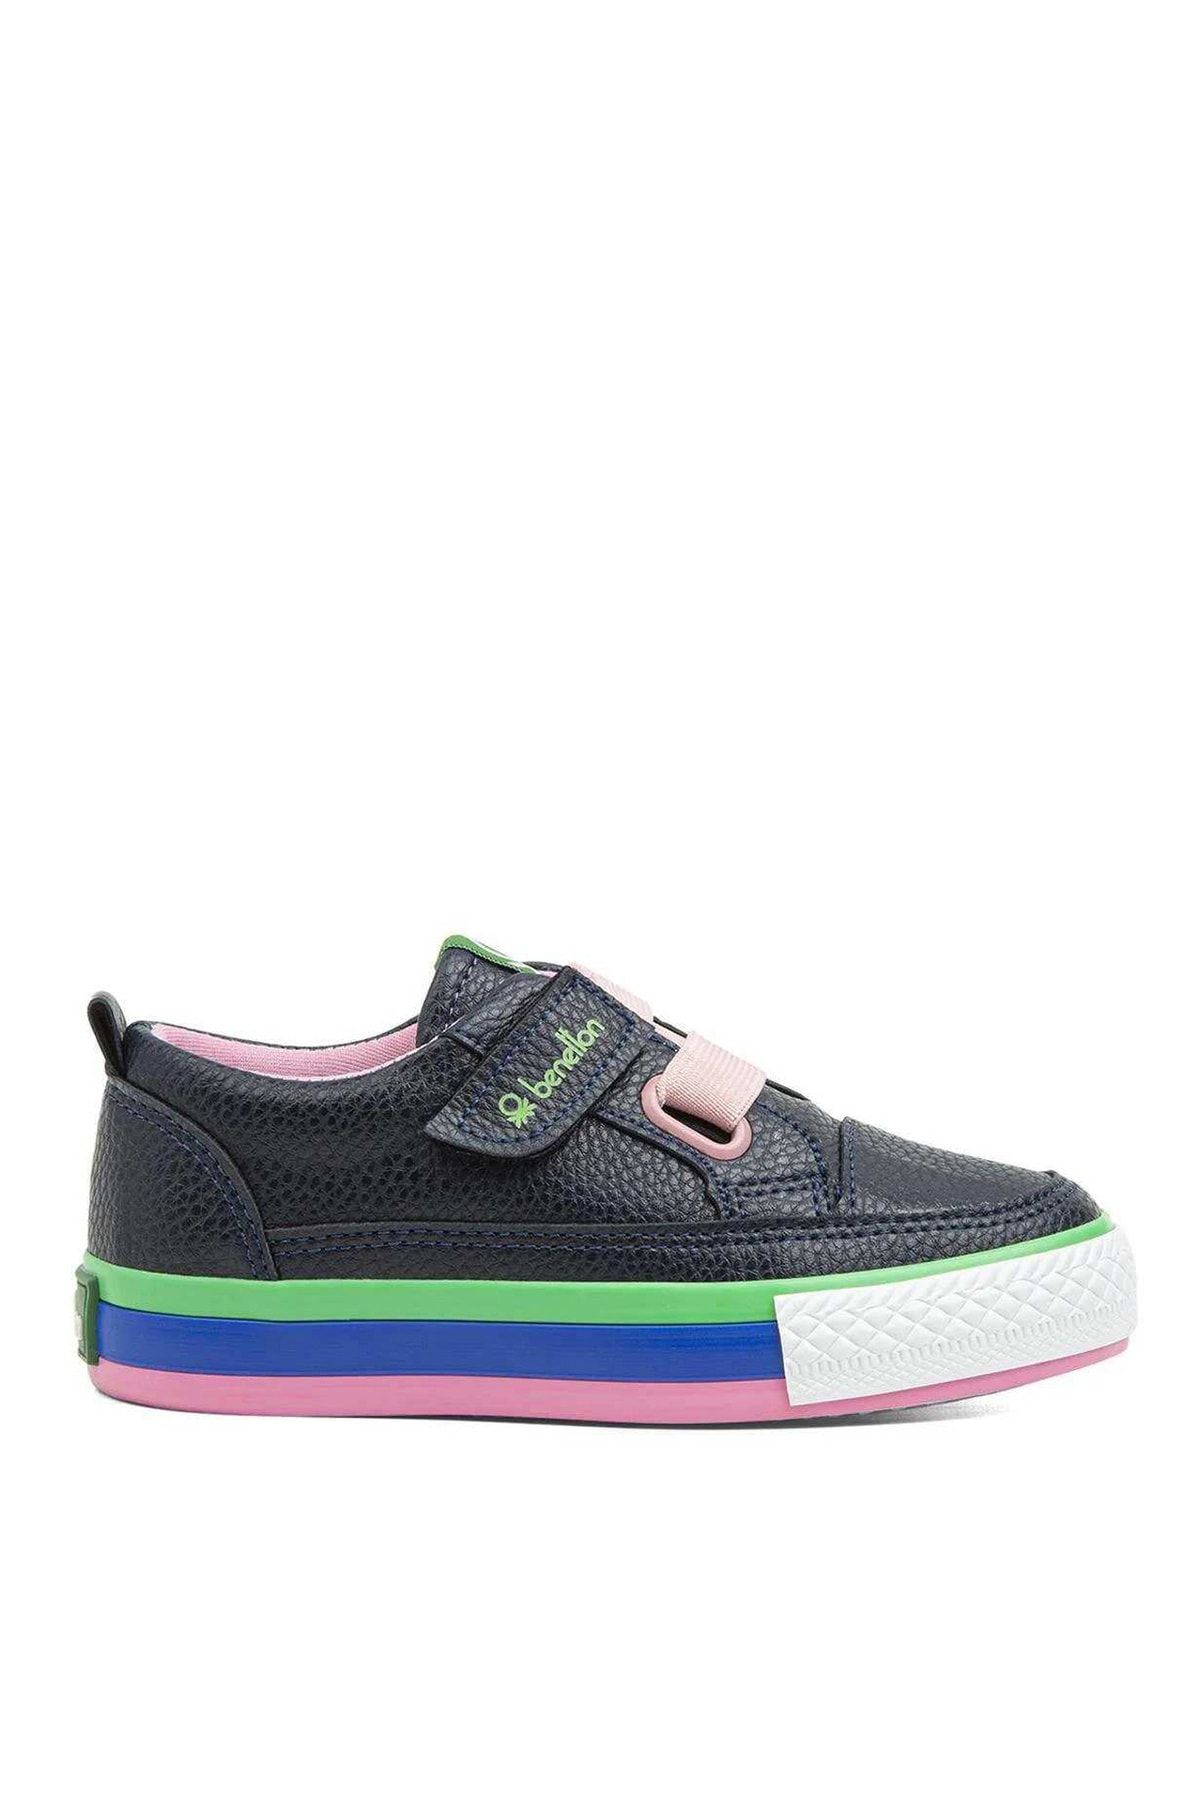 Benetton Siyah - Yeşil Erkek Çocuk Günlük Ayakkabı BN-30441